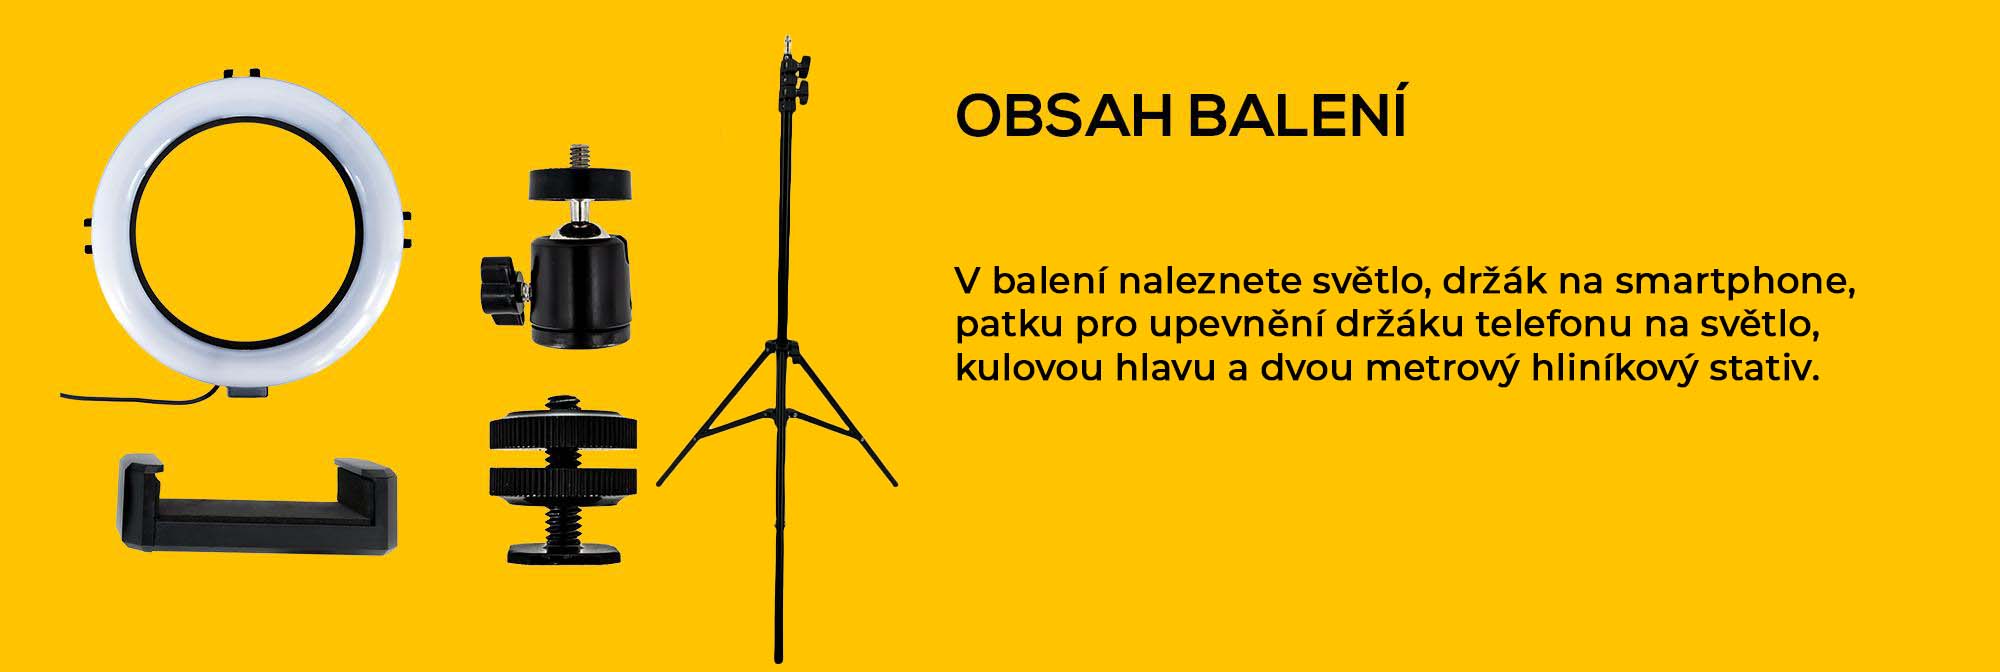 obsah_baleni